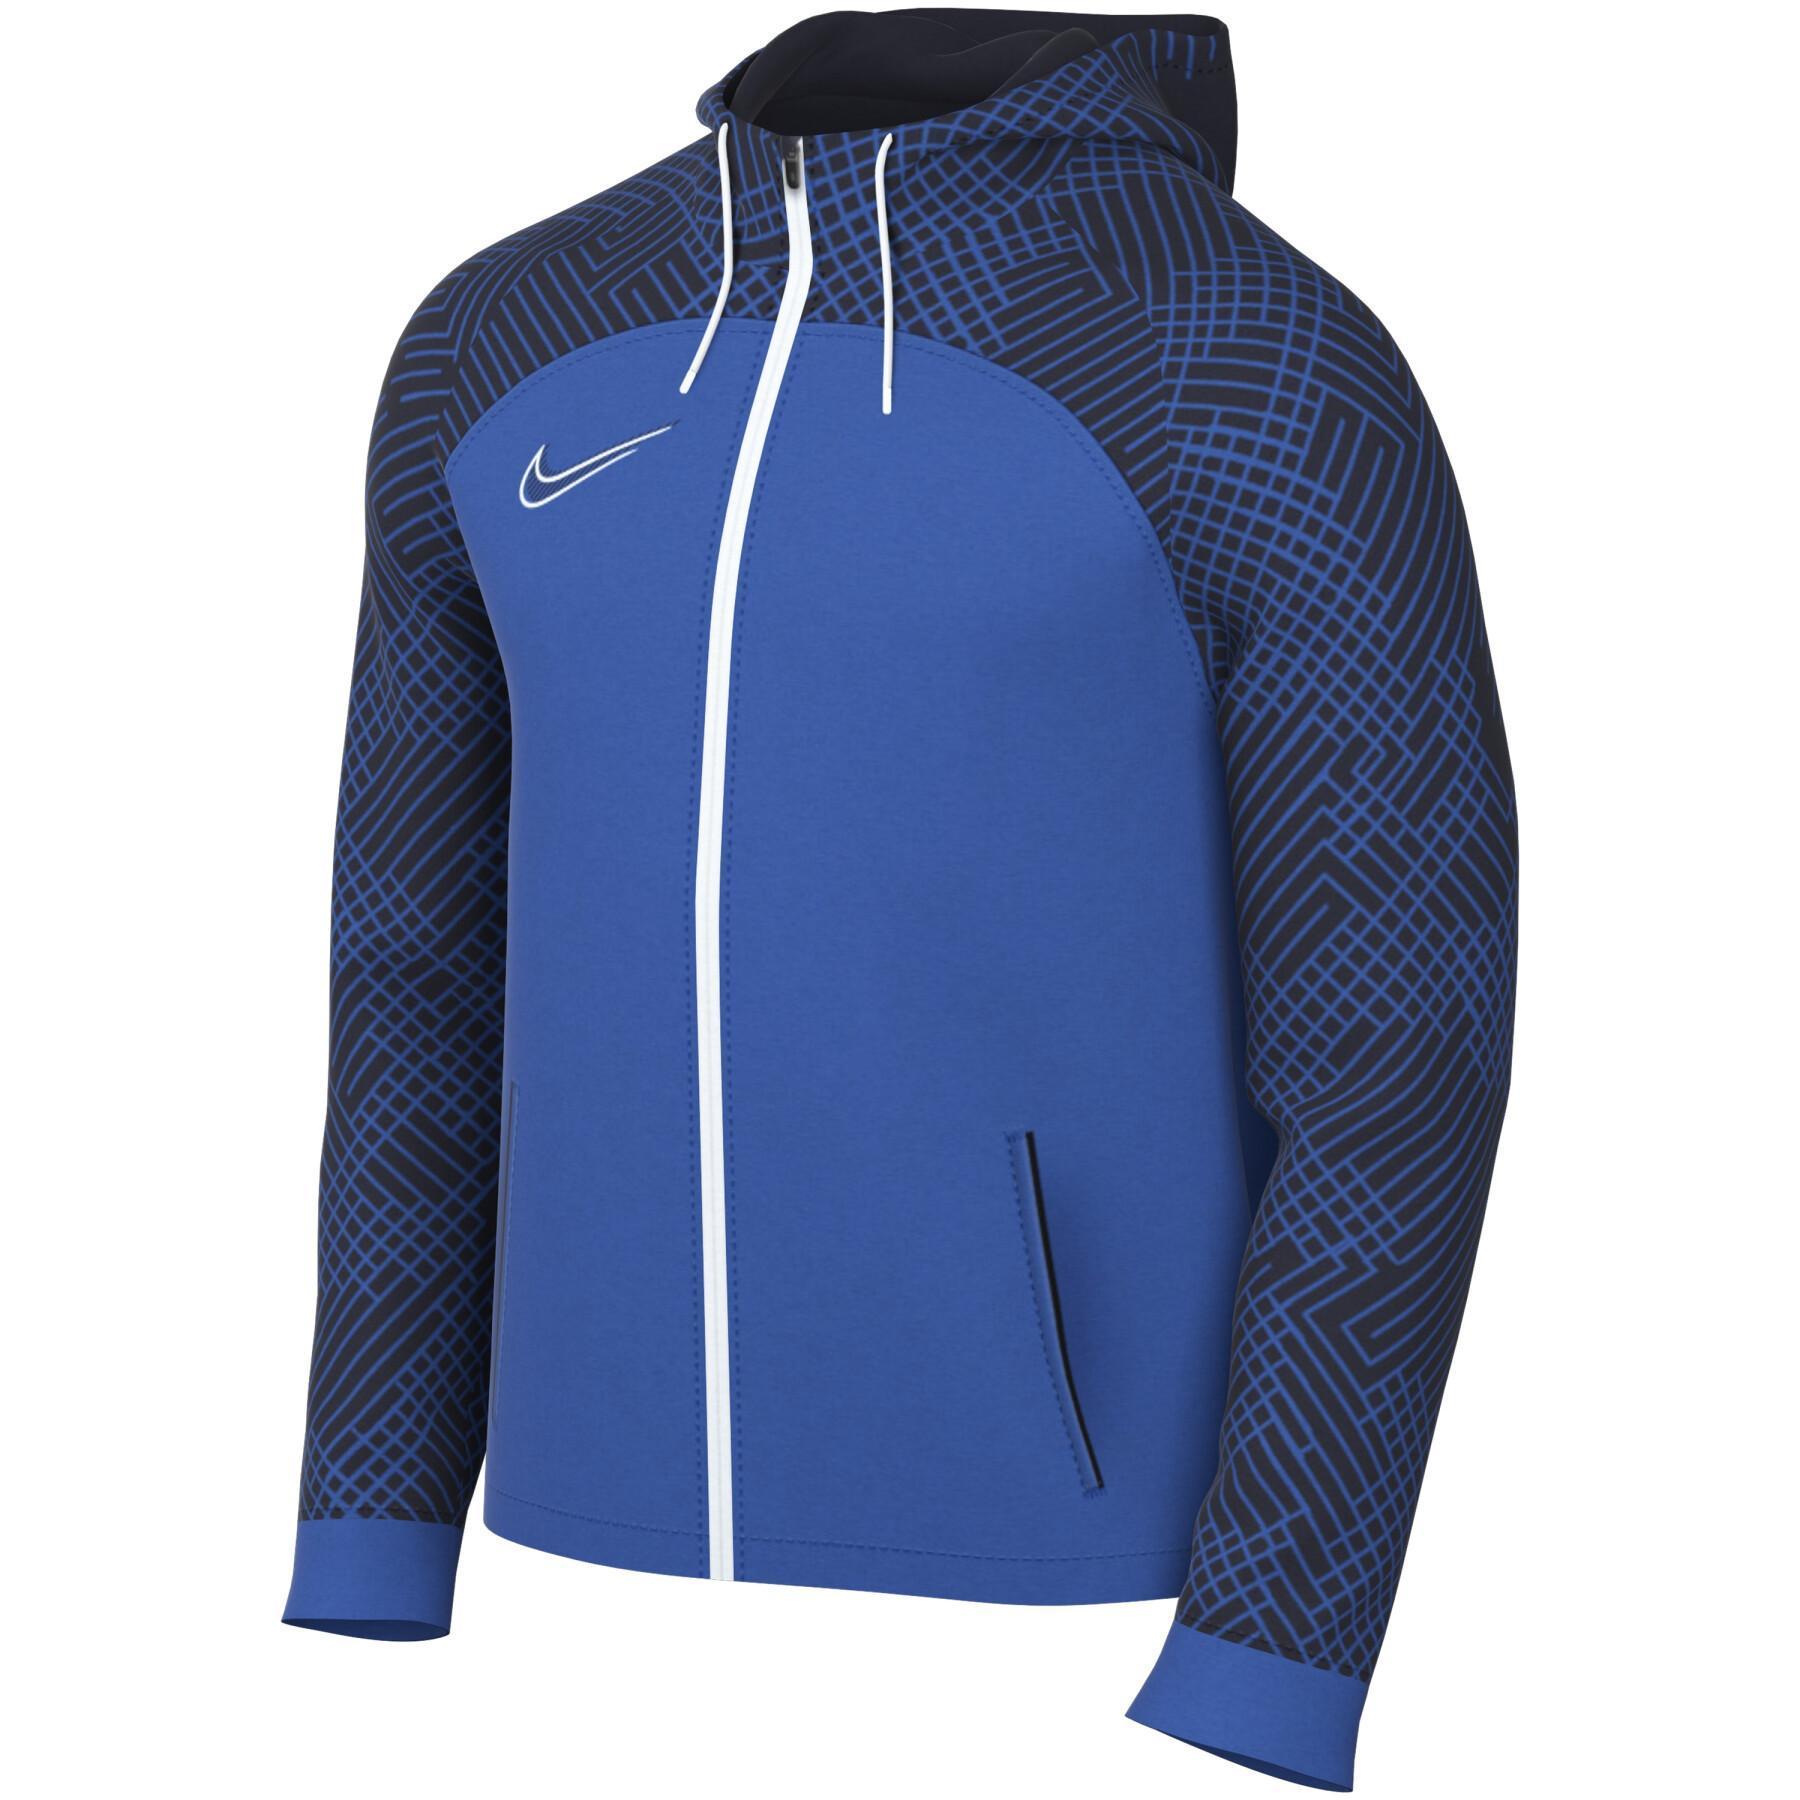 Sweat jacket Nike Dri-FIT Strike